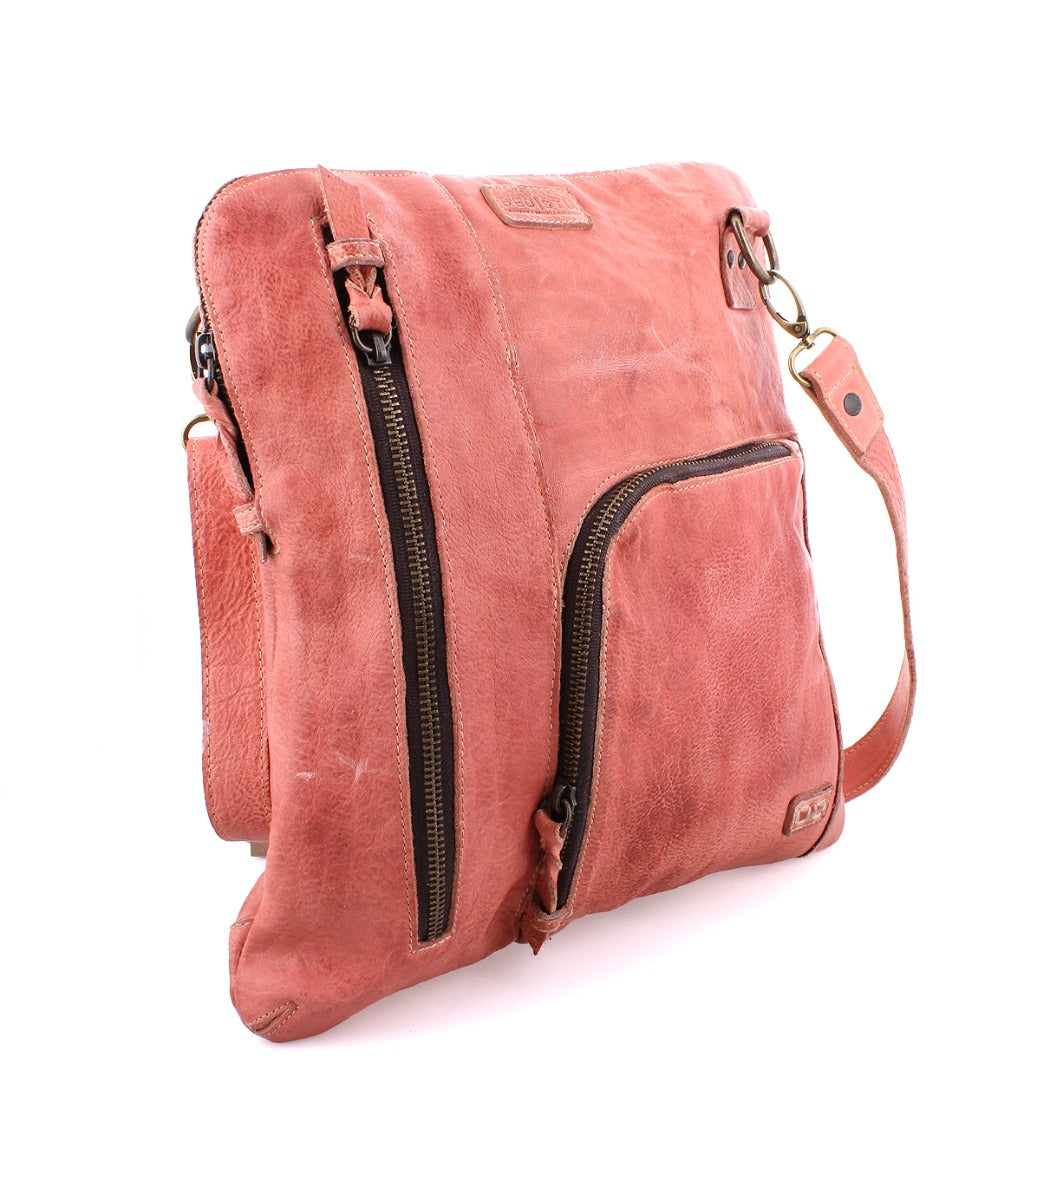 A Bed Stu Aiken pink leather crossbody bag with a zipper.